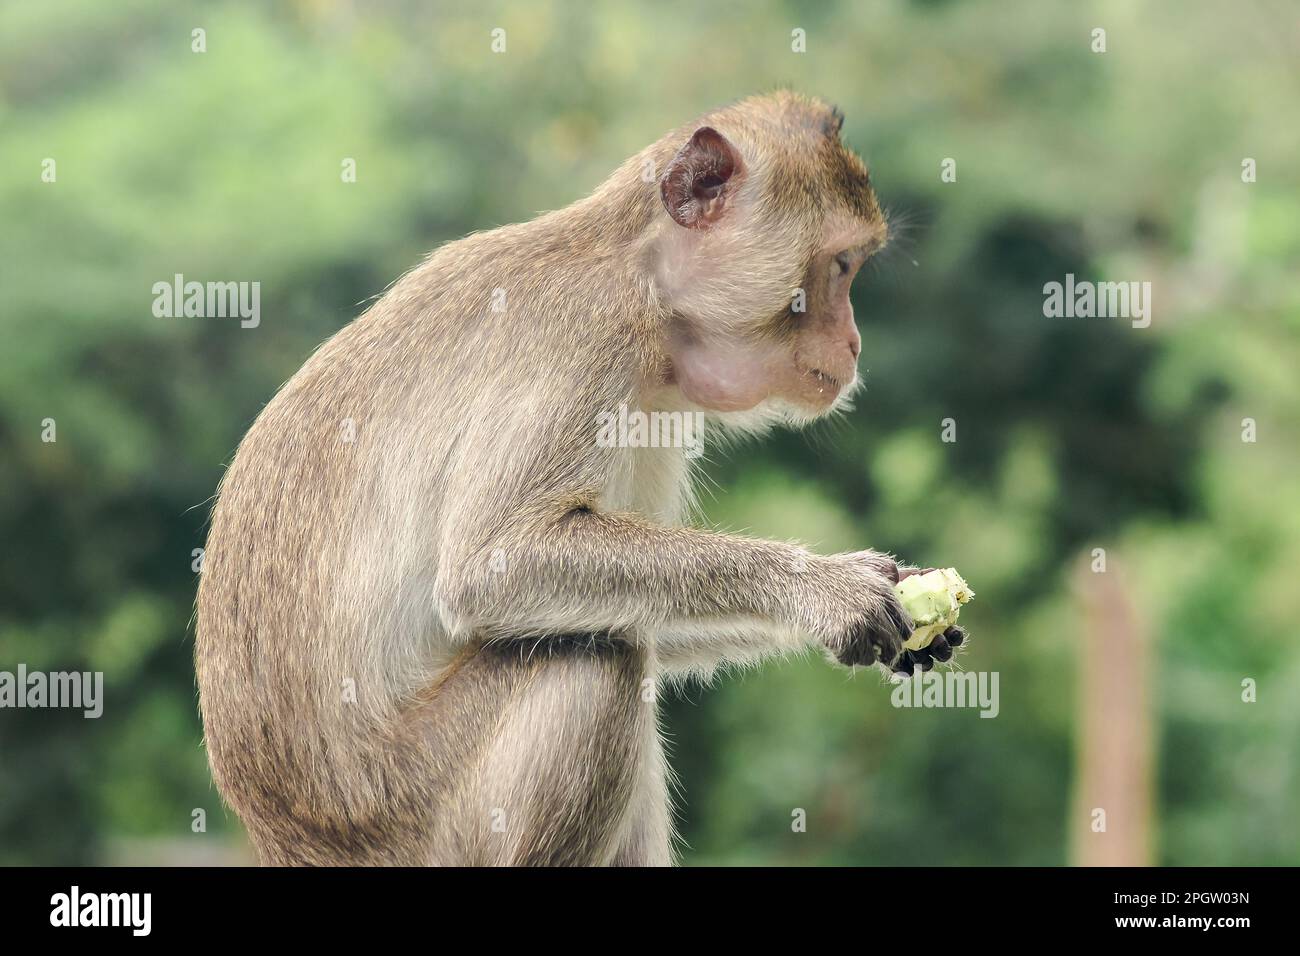 Funny Monkey Birthday Card | eBay